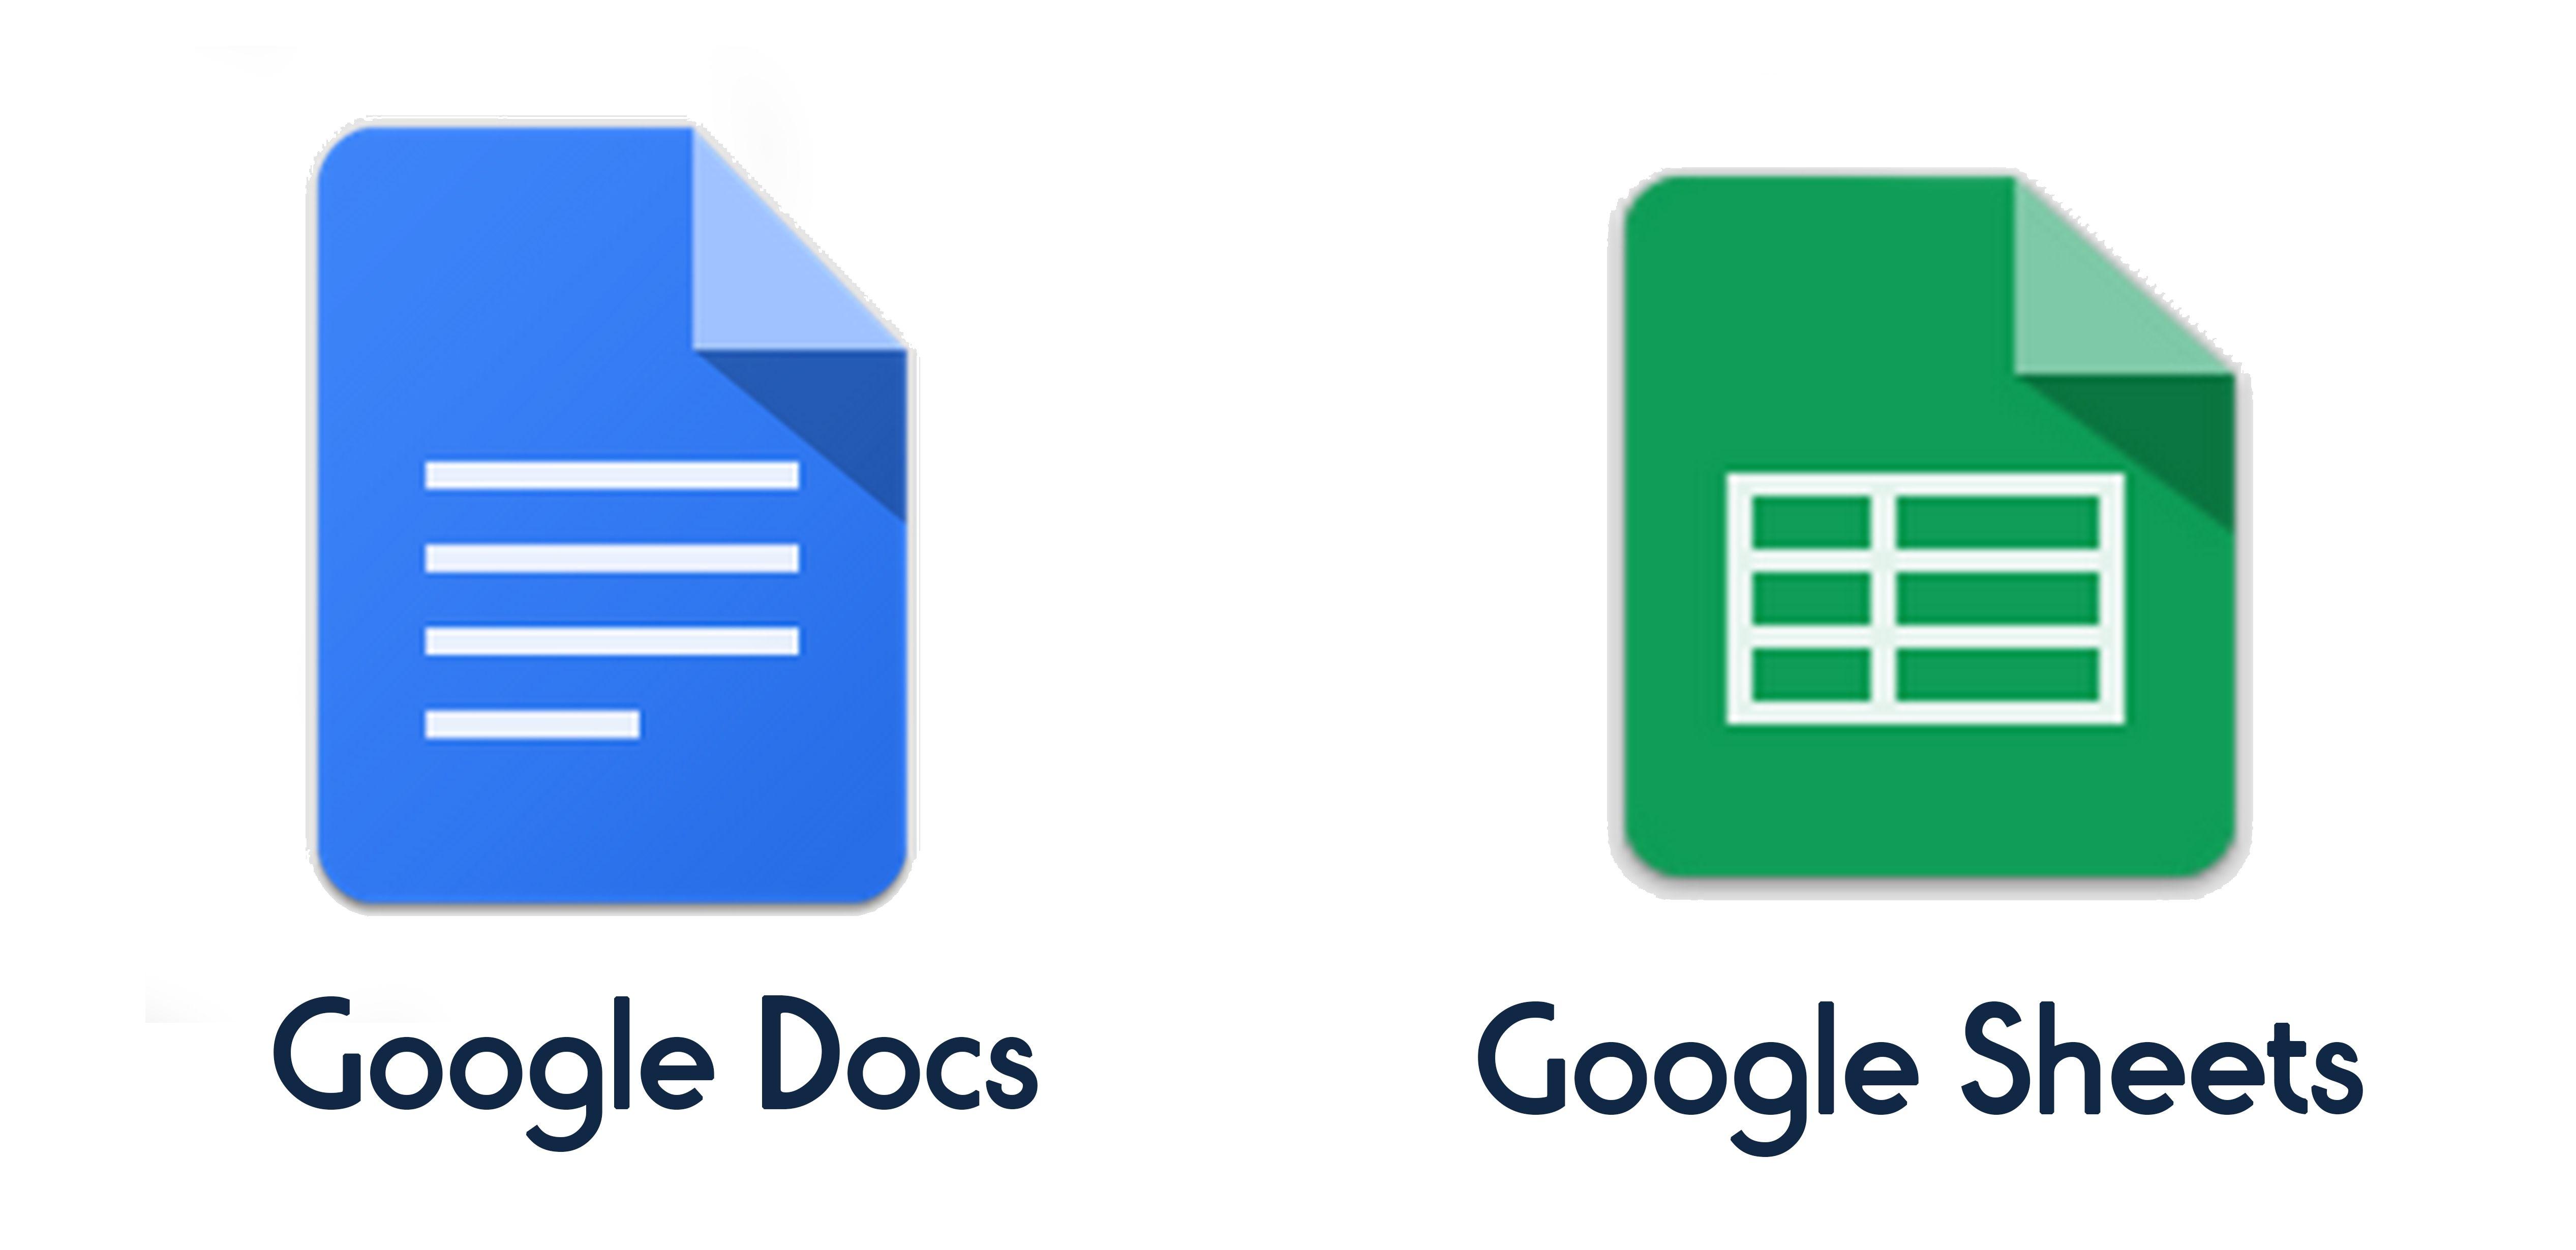 Гуглдок. Гугл документы. Гугл таблицы лого. Google docs документы. Гугл документы логотип.